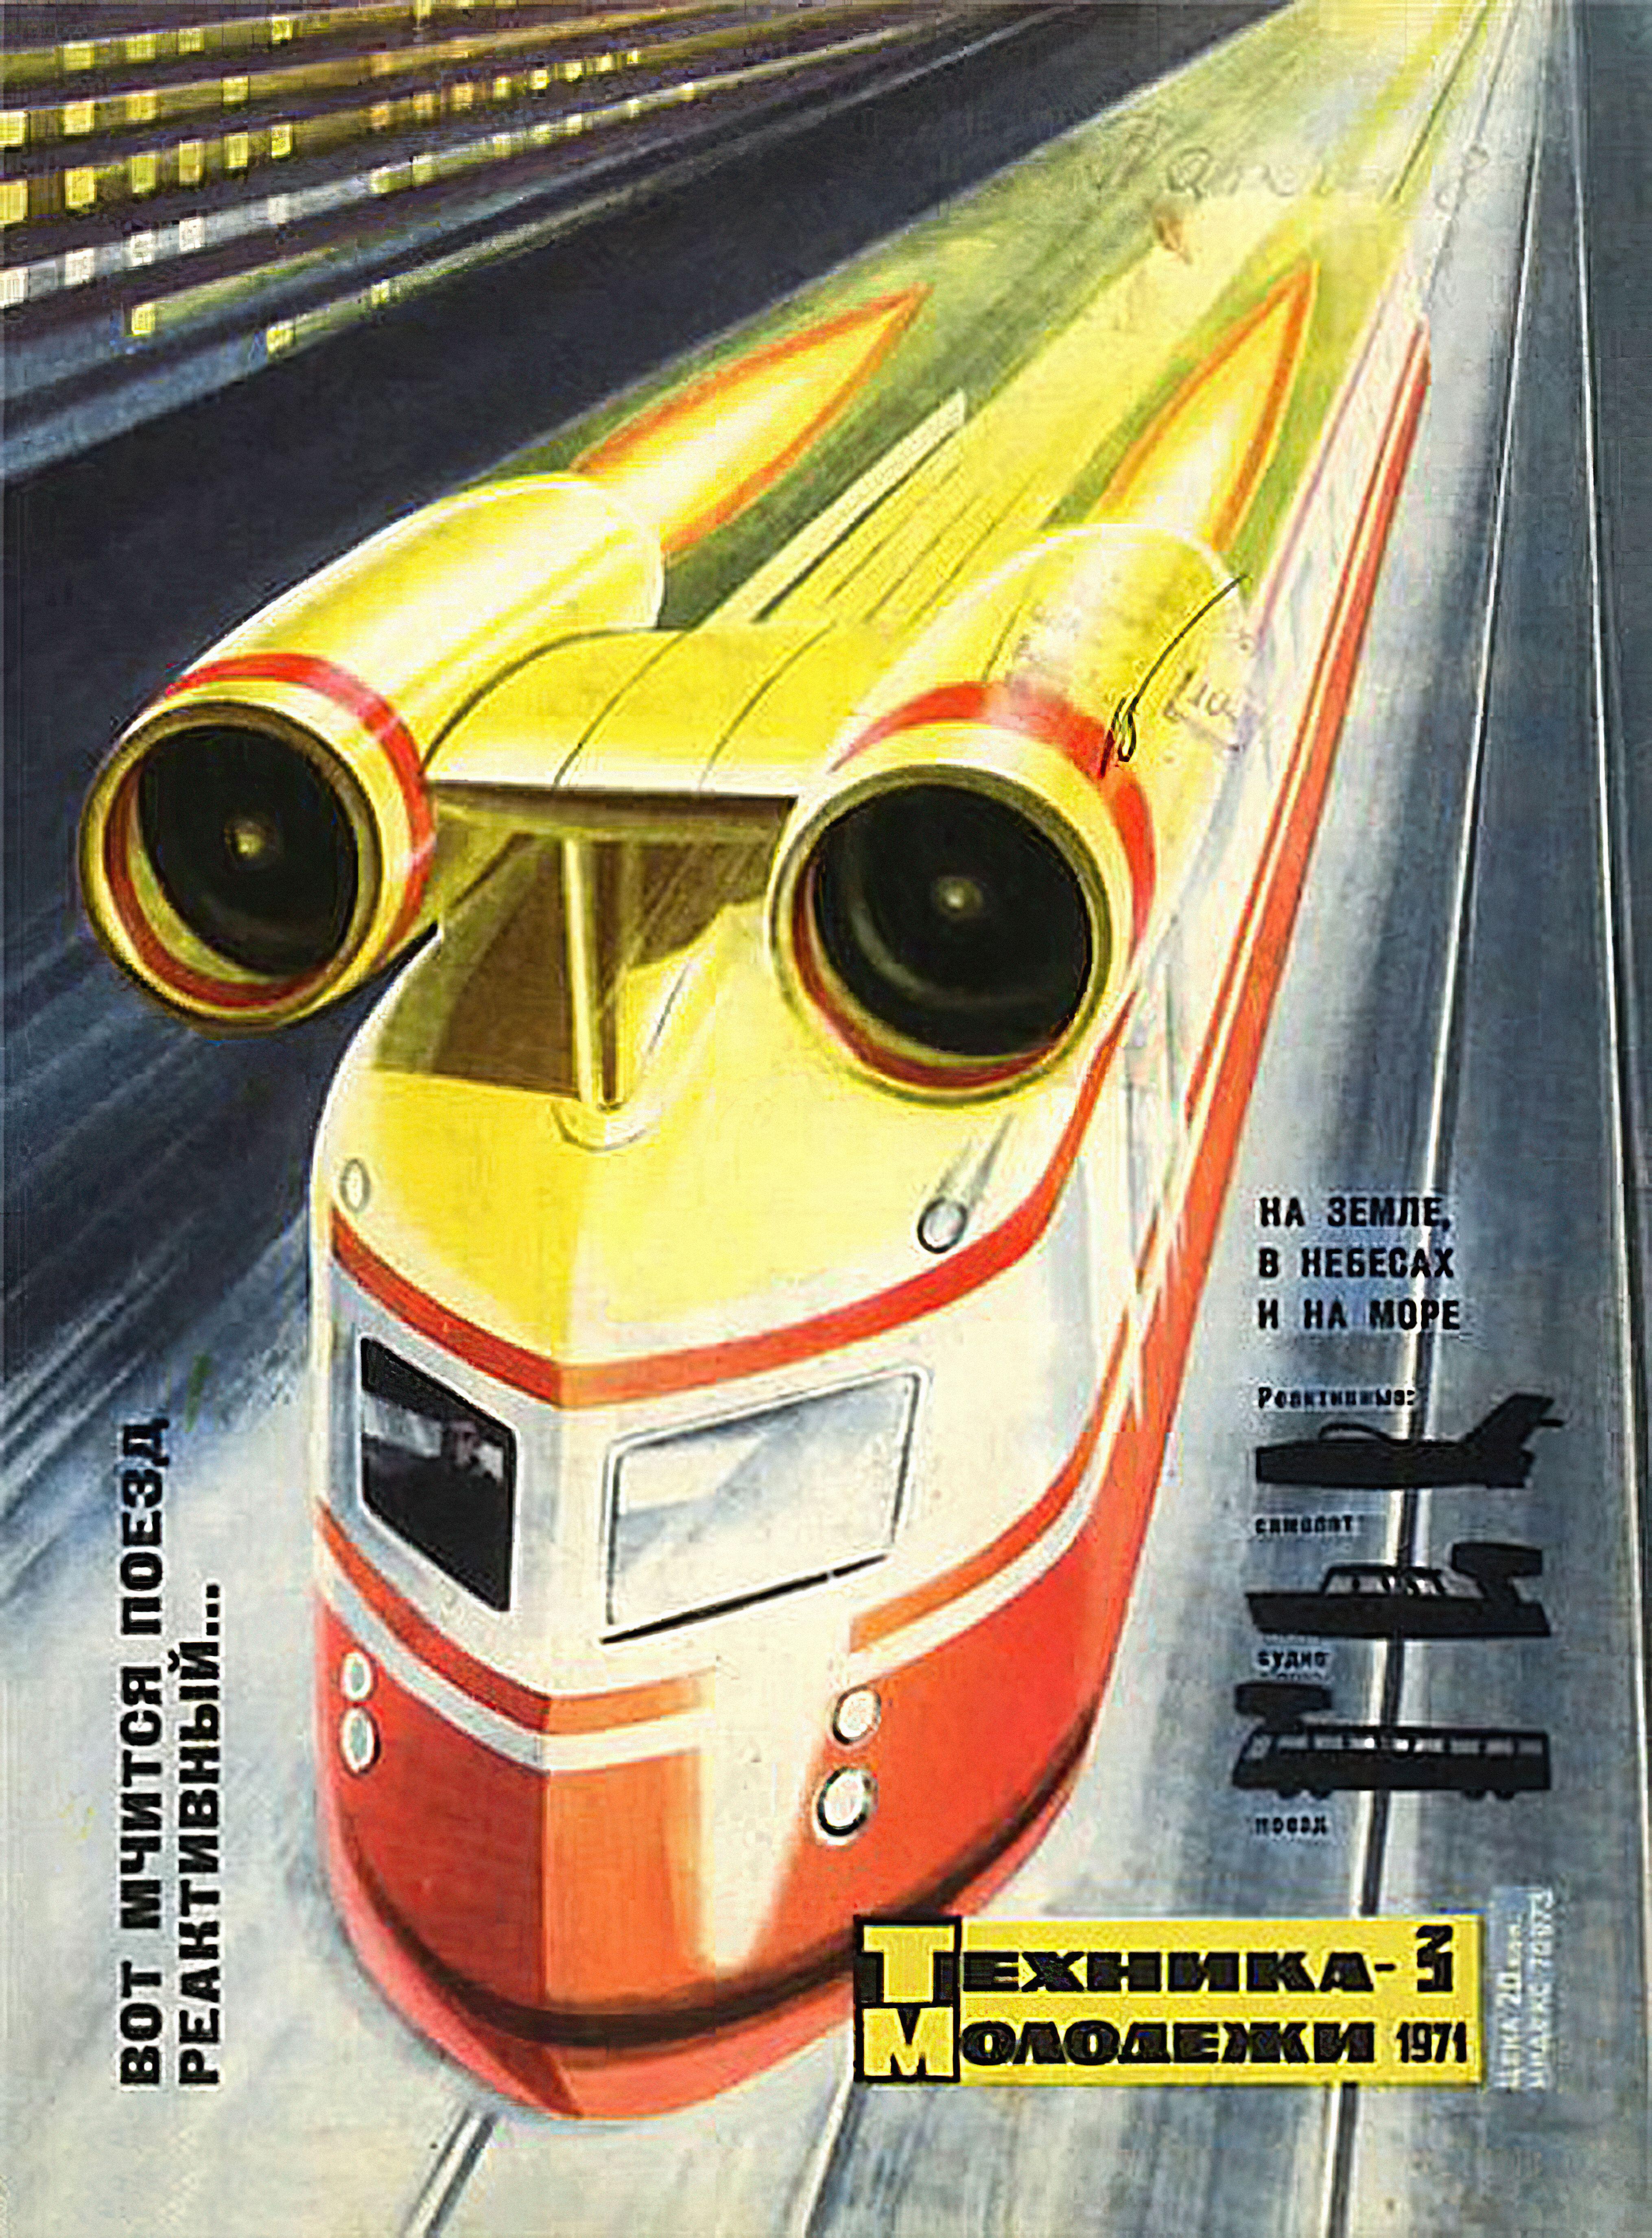 Poster aus der Sowjetzeit mit einem düsengetriebenen Zug mit Erwähnungen von Turboflugzeugen und Yachten